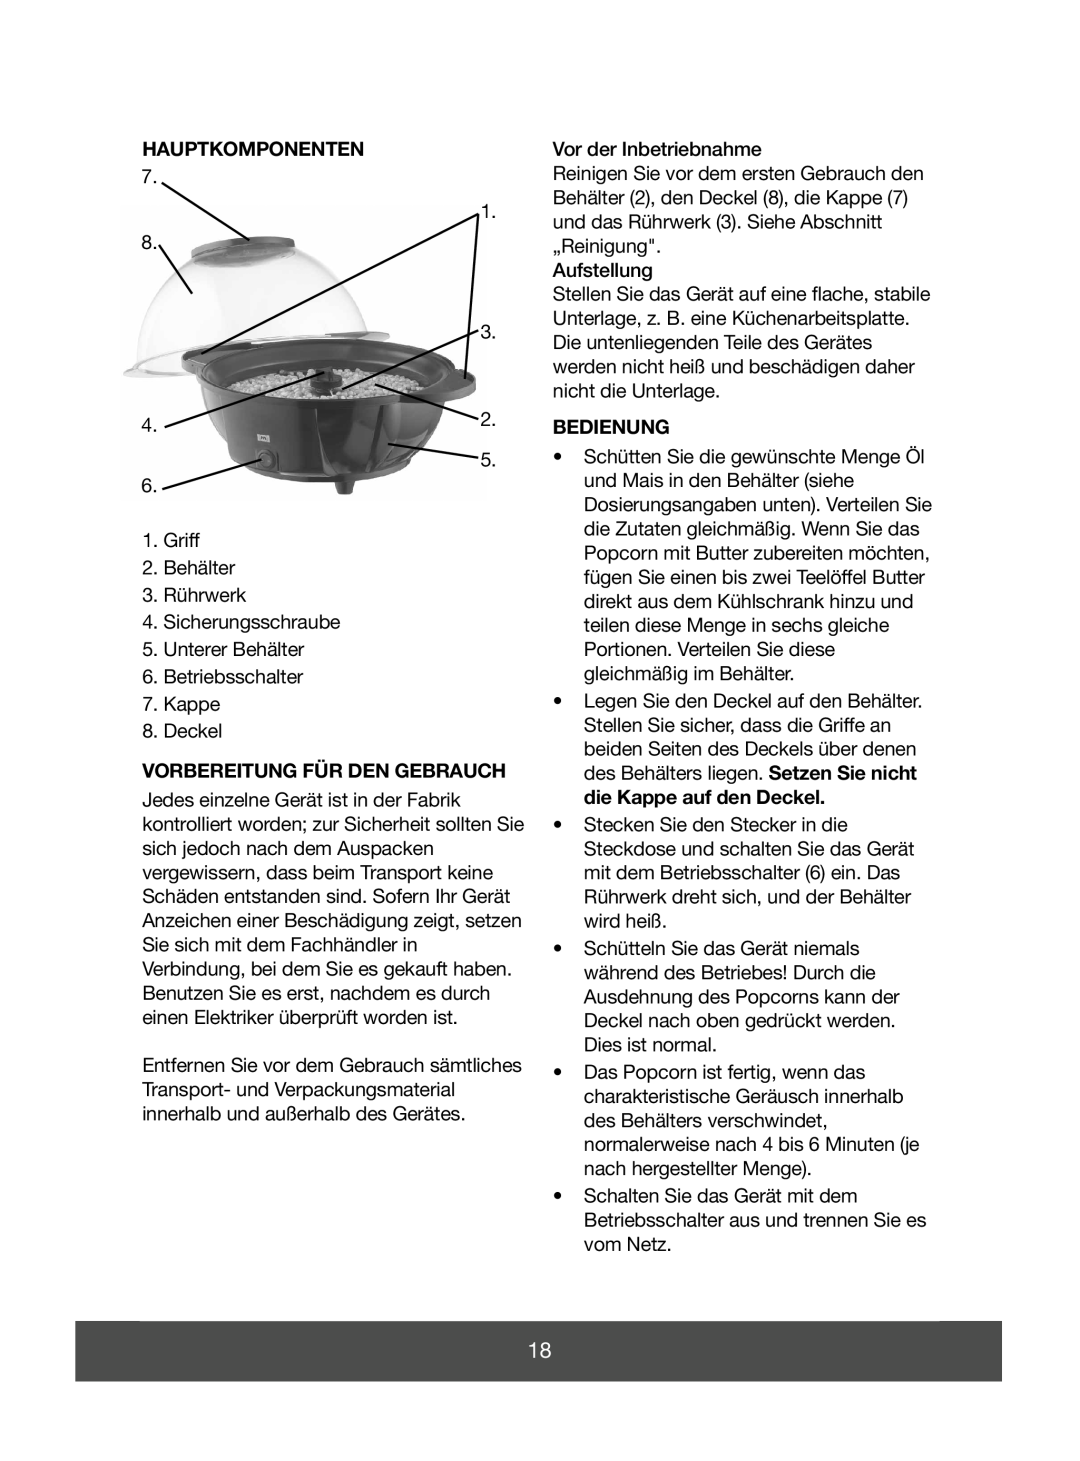 Melissa 643-041 manual Hauptkomponenten, Vorbereitung Für Den Gebrauch, Bedienung 